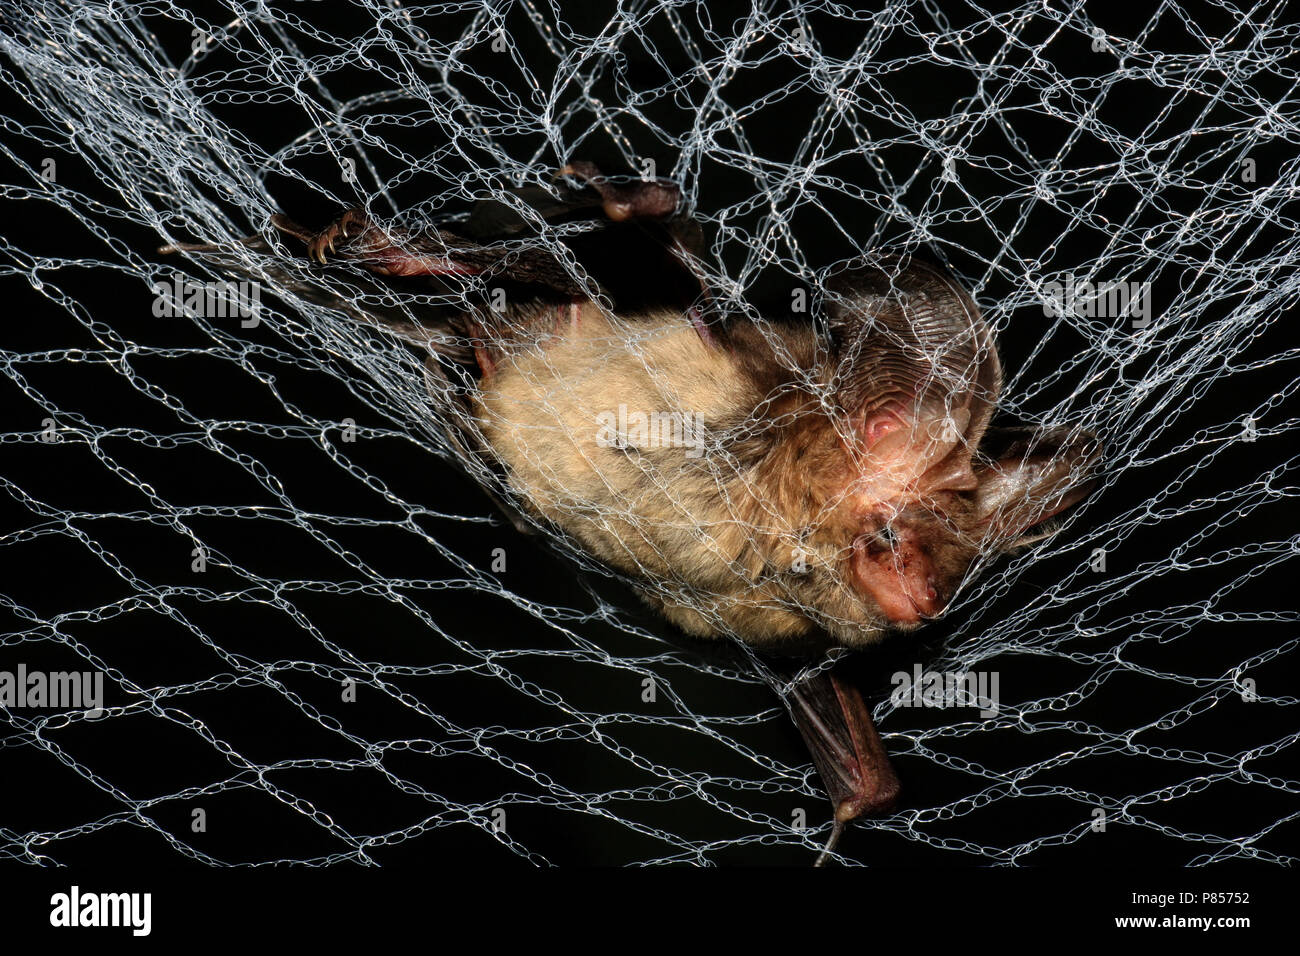 Grootoorvleermuis gevangen in een net; Marrón larga murciélago orejudo atrapado en una red Foto de stock